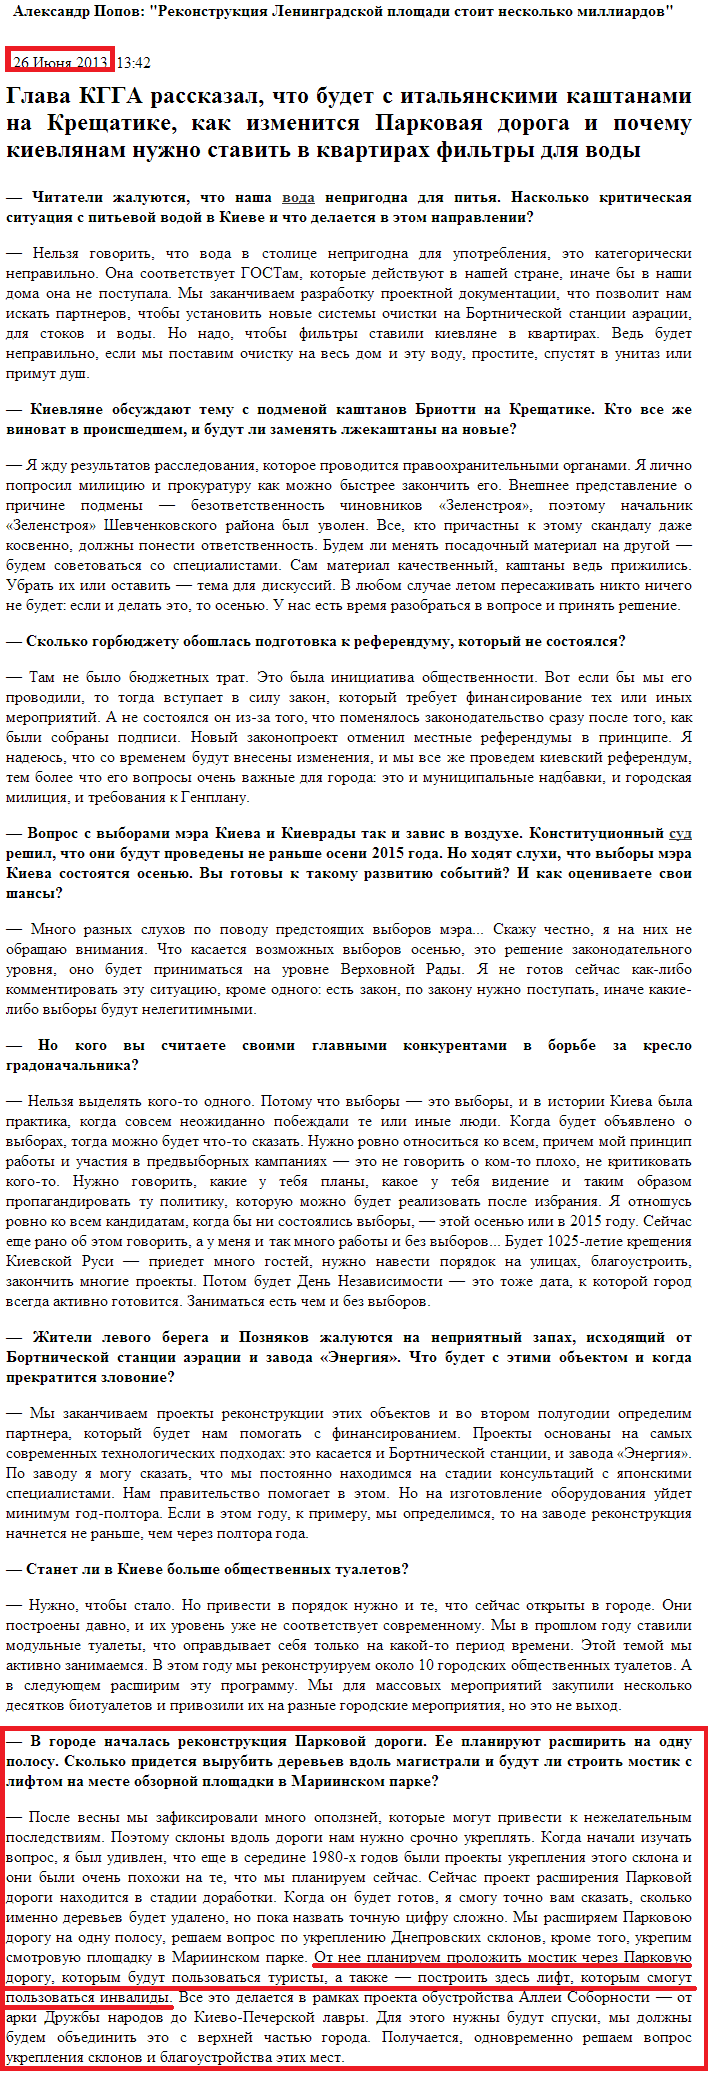 http://kiev.segodnya.ua/kpower/Aleksandr-Popov-Rekonstrukciyu-prospekta-Pobedy-zakonchim-v-sleduyushchem-godu-444468.html